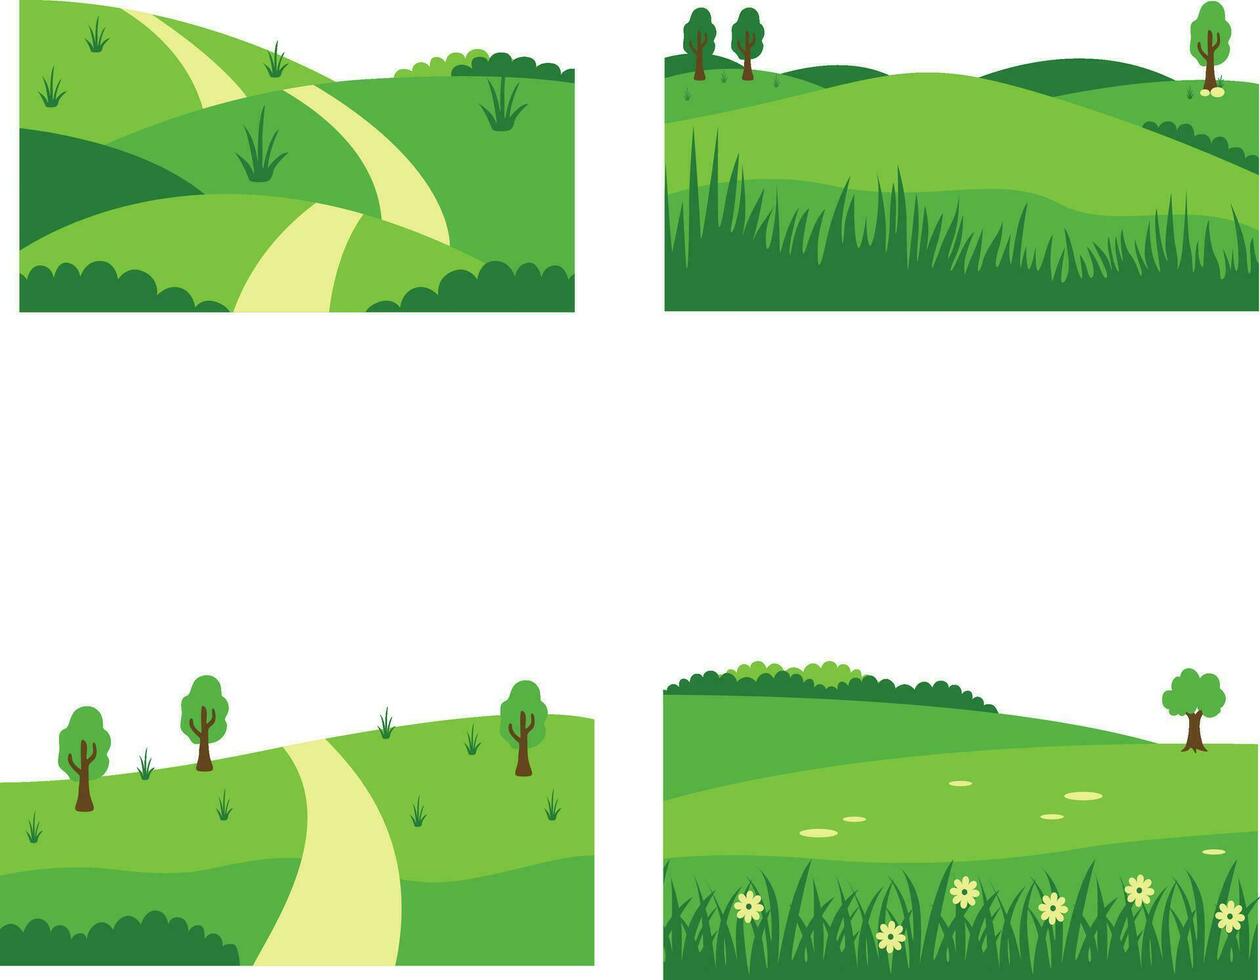 reeks van verschillend veld- groen heuvels. in esthetisch ontwerp concept. vector illustratie.